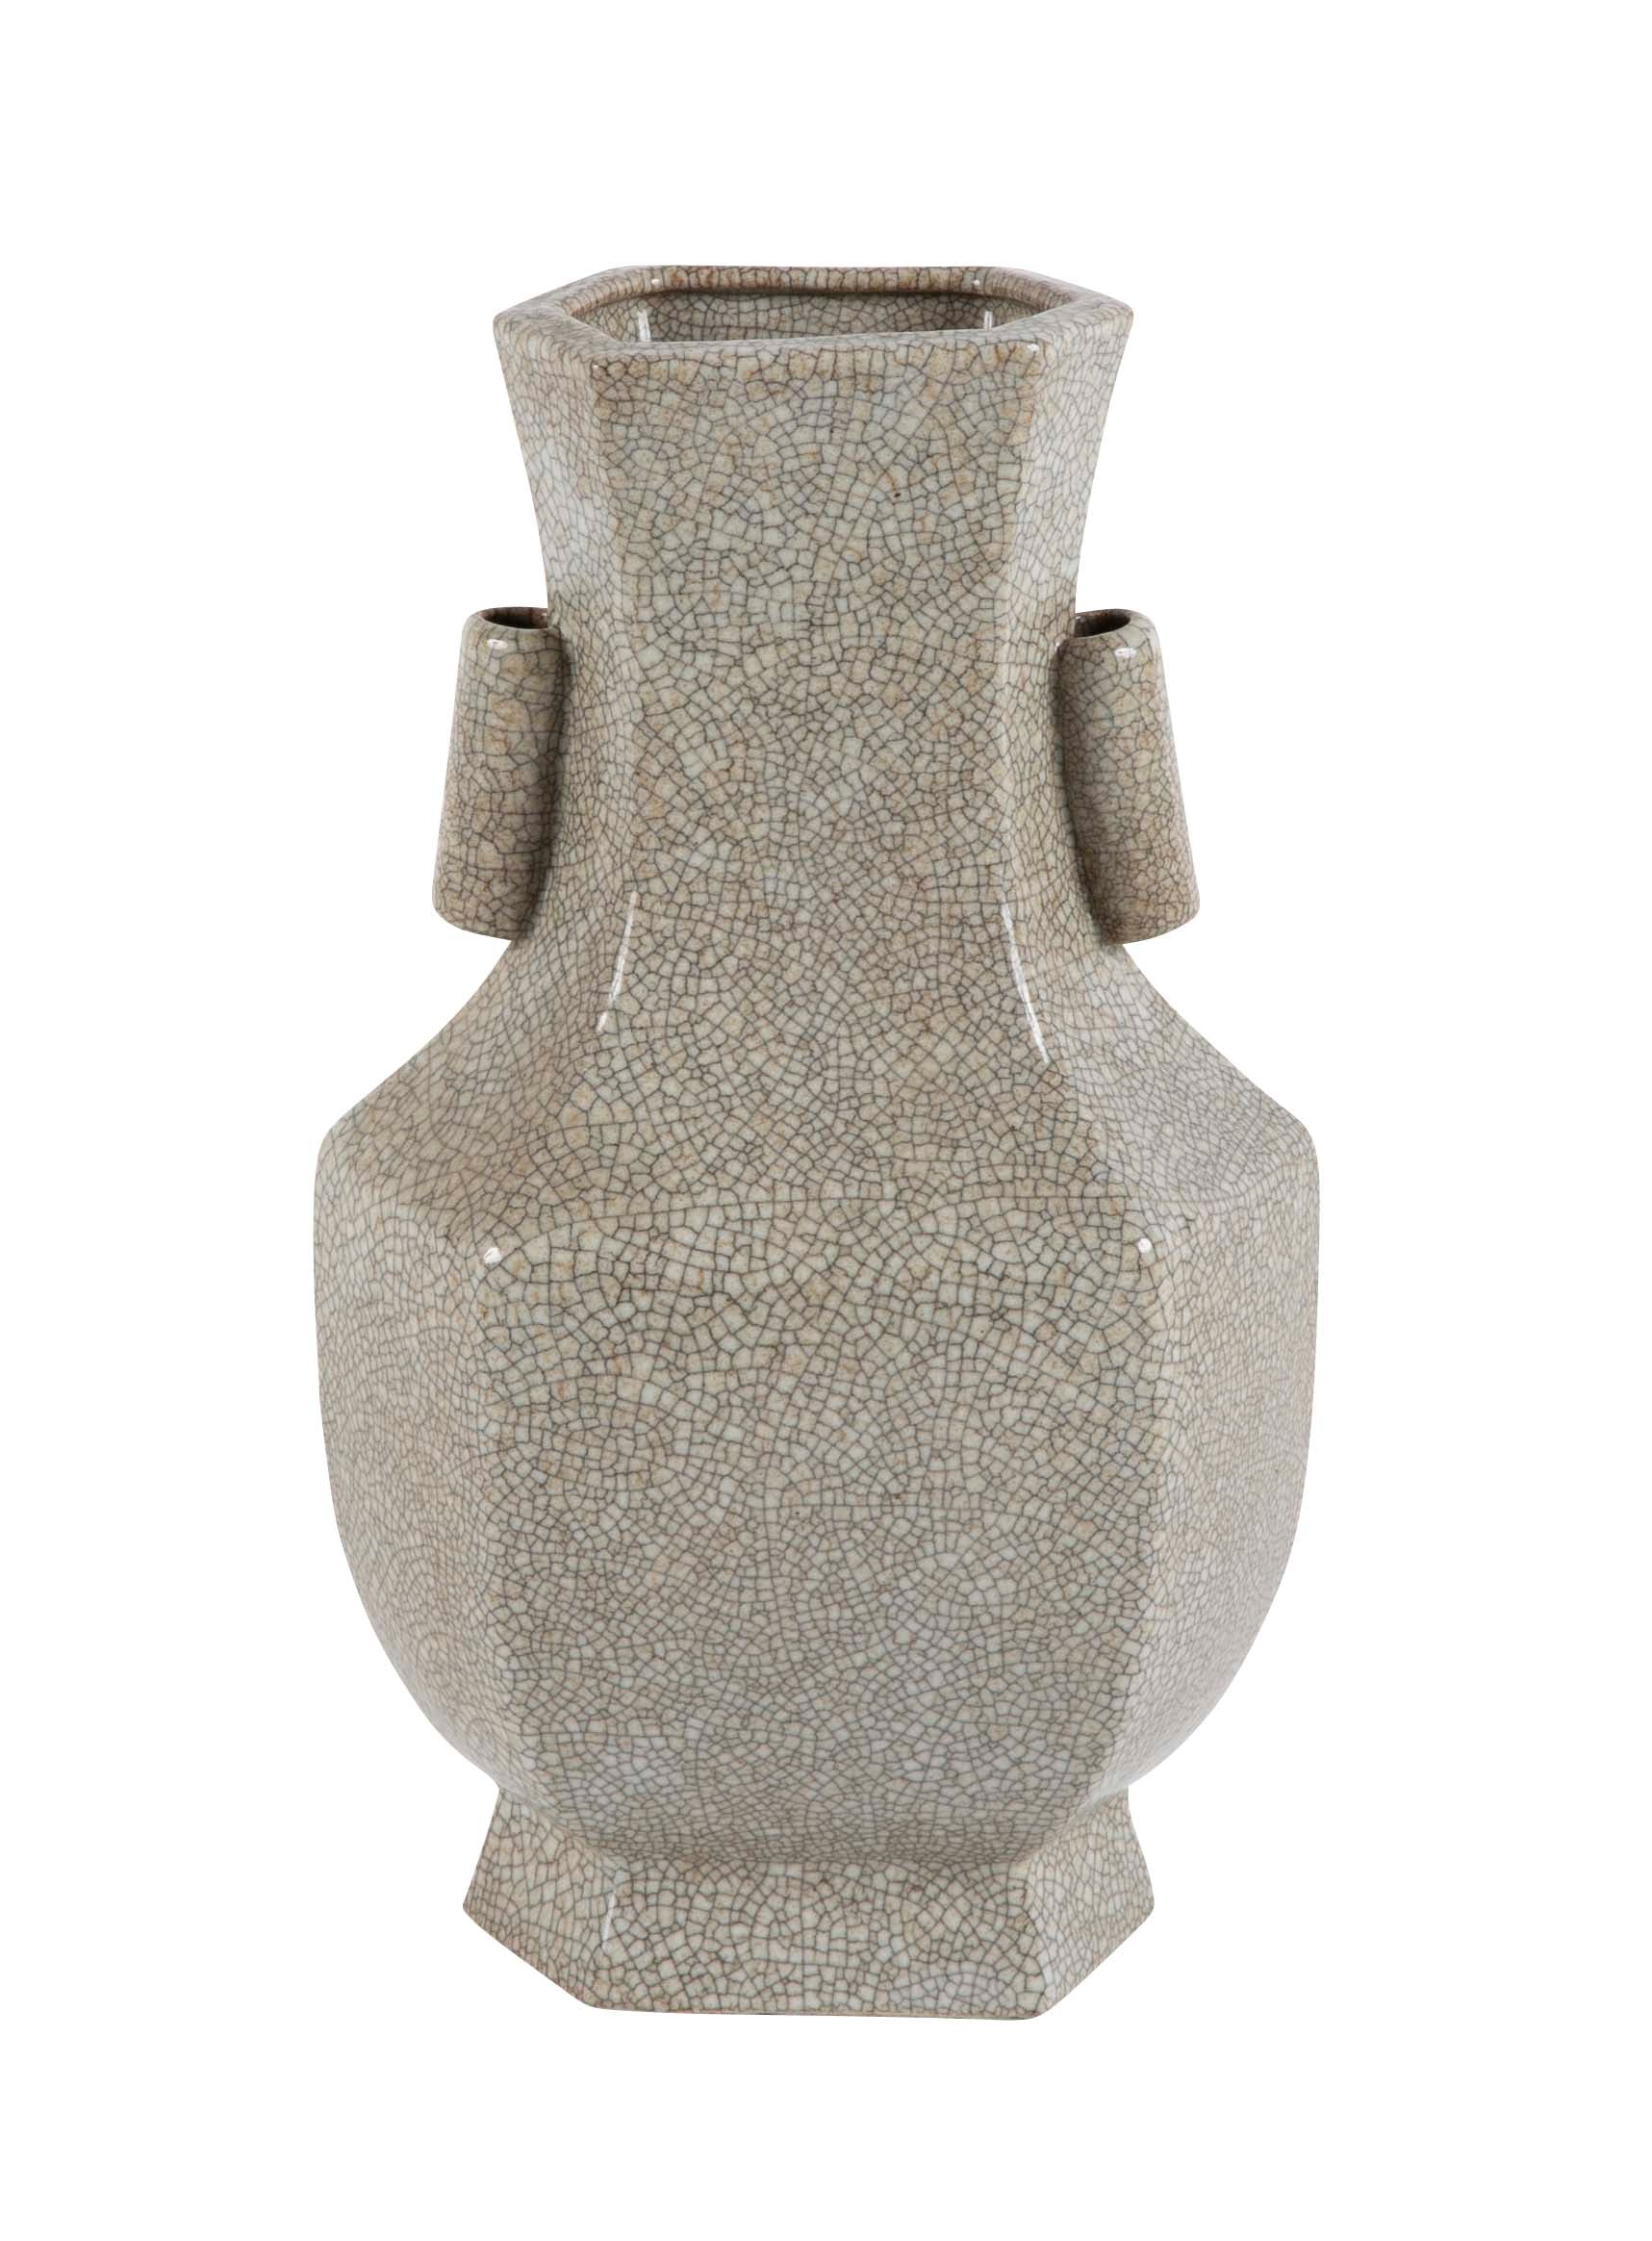 Late Qing Dynasty Gu Form Vase